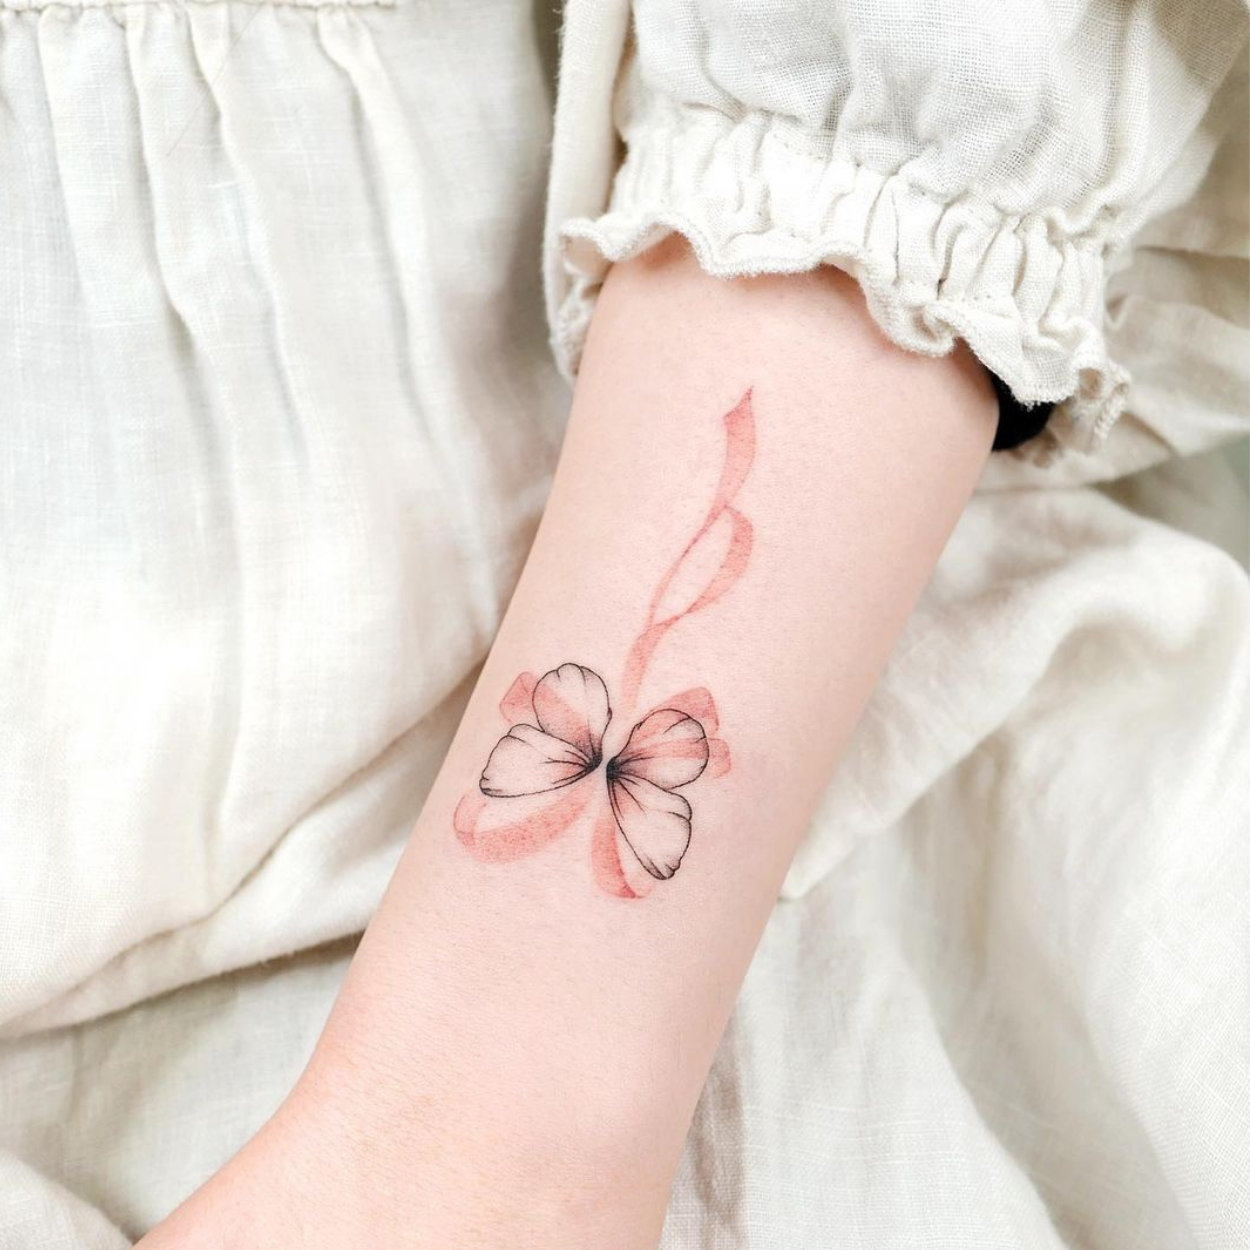 tatuagem de borboleta delicada no antebraço